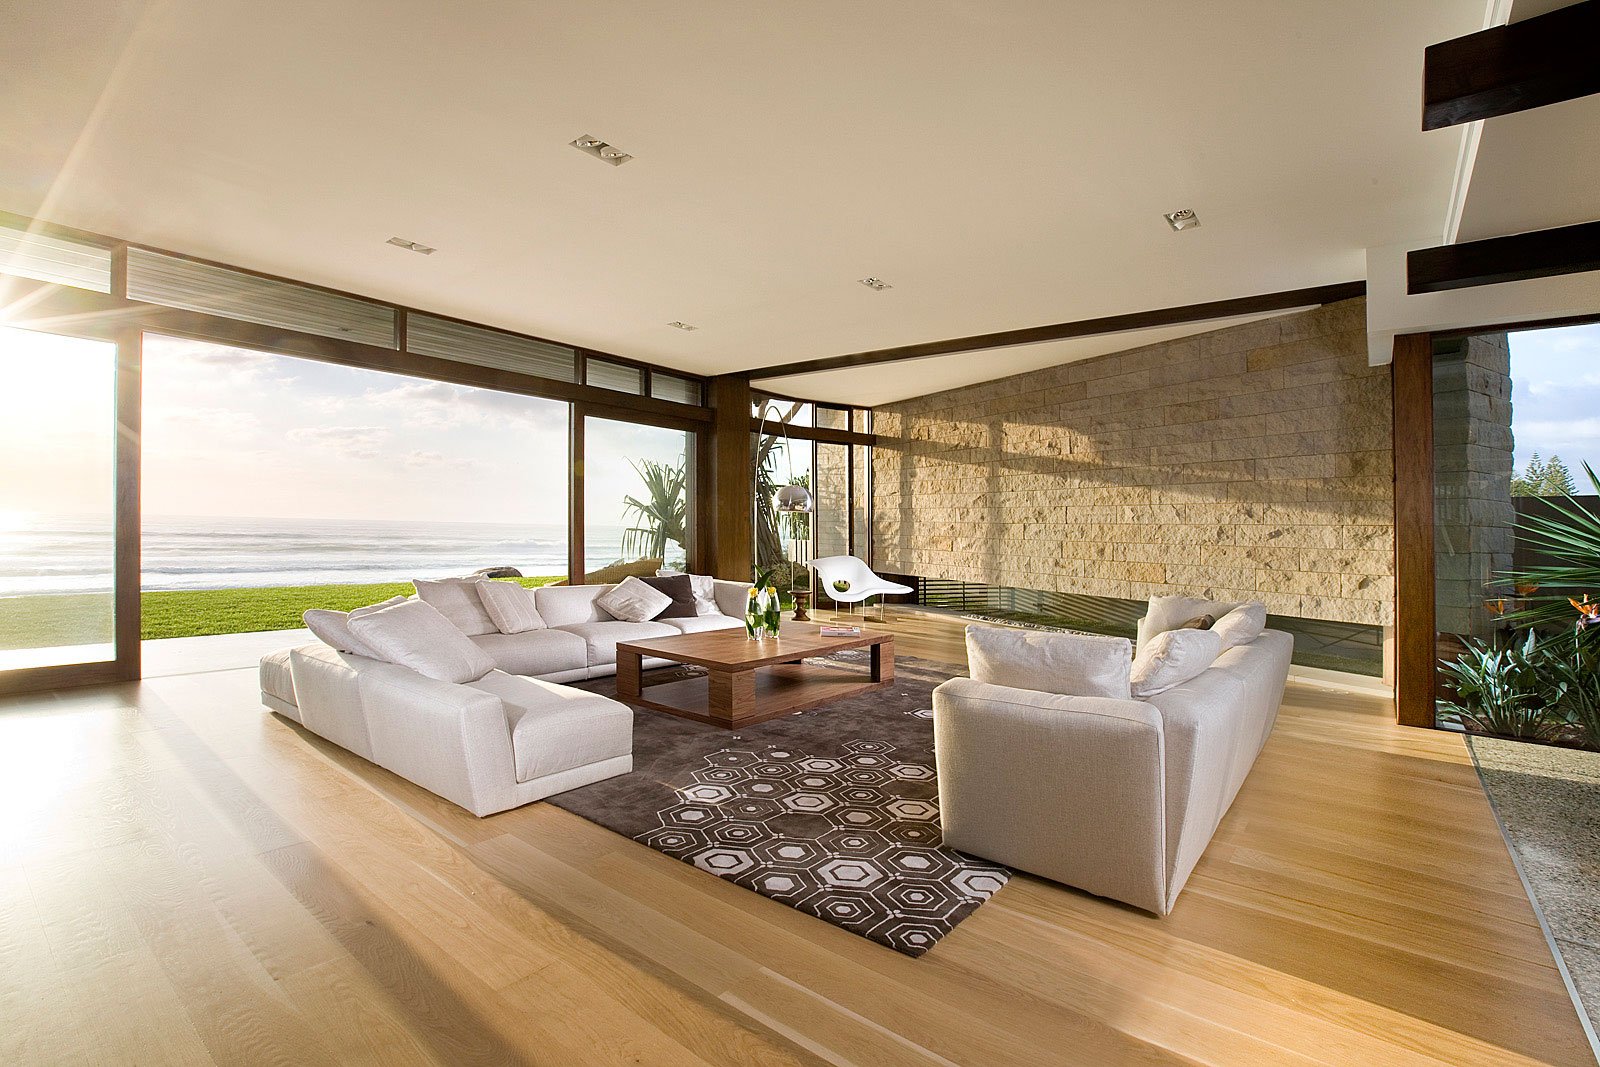 design ideas for open living room